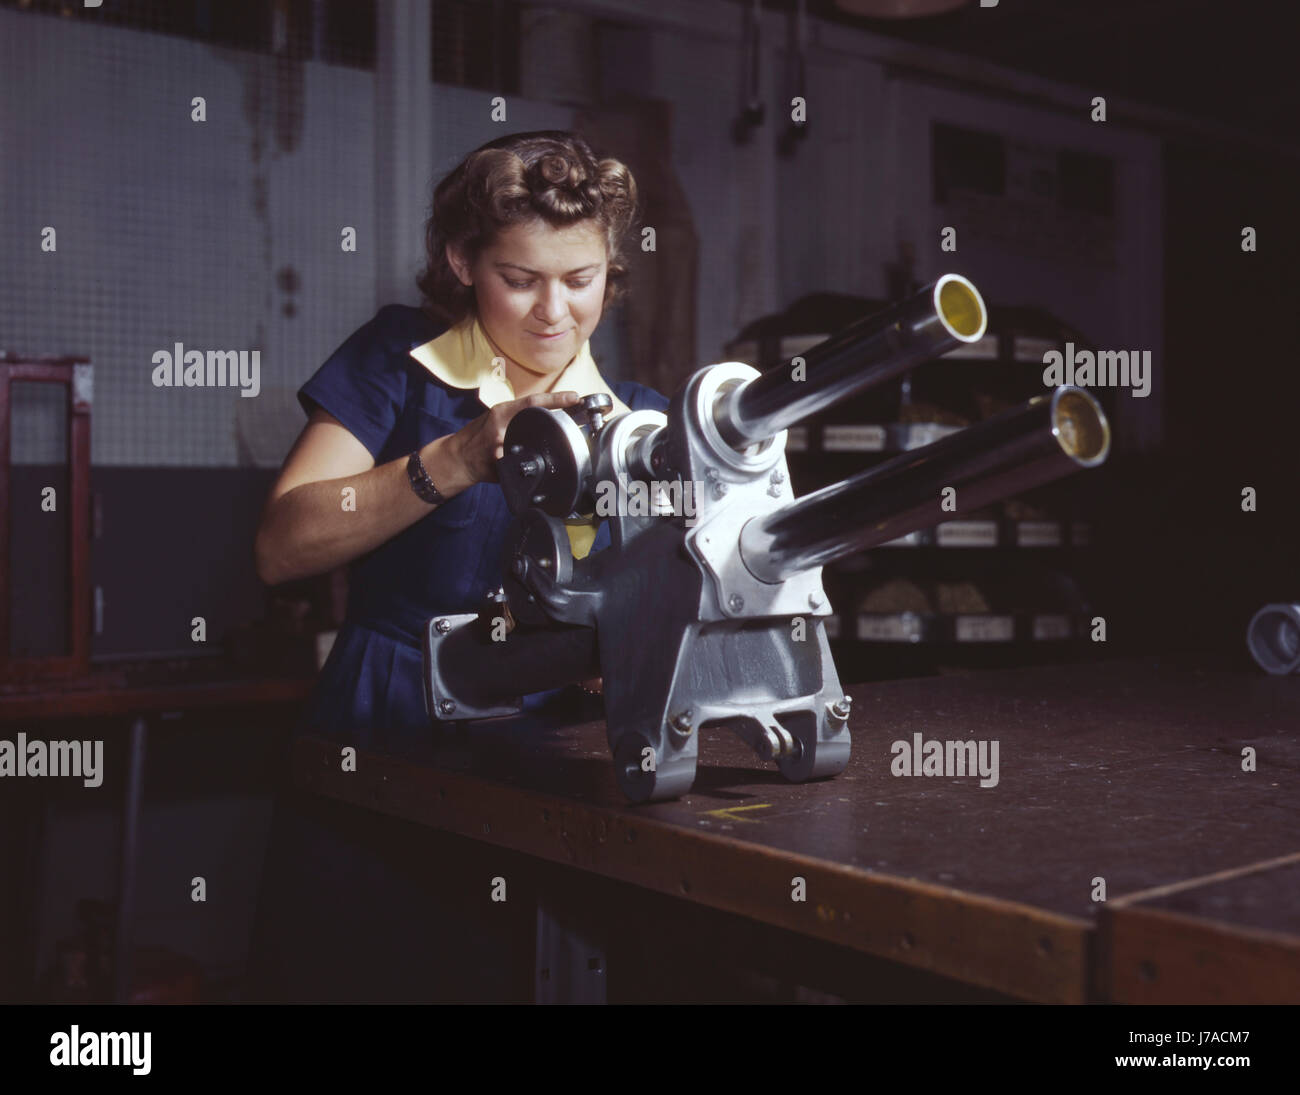 Eine junge Frau über das Fahrwerk Mechanismus eines Kampfflugzeugs p-51 1942 arbeiten. Stockfoto